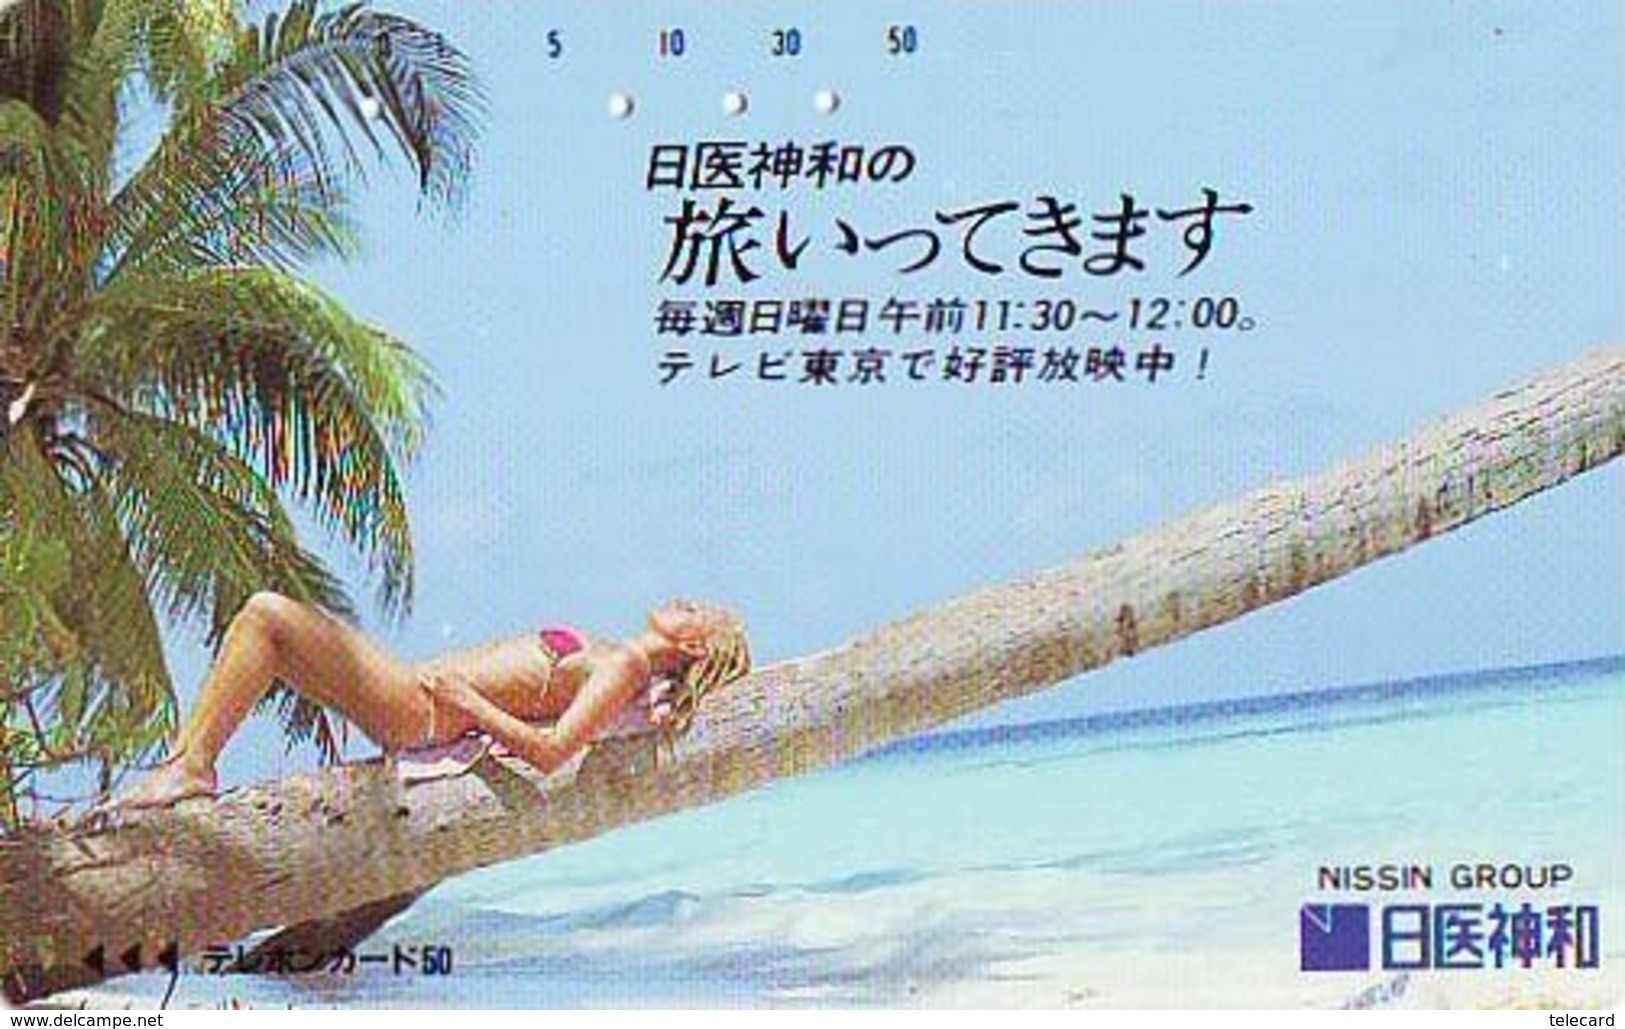 Télécarte Japon * EROTIQUE (6568)  *  EROTIC PHONECARD JAPAN * TK * BATHCLOTHES * FEMME SEXY LADY LINGERIE - Mode